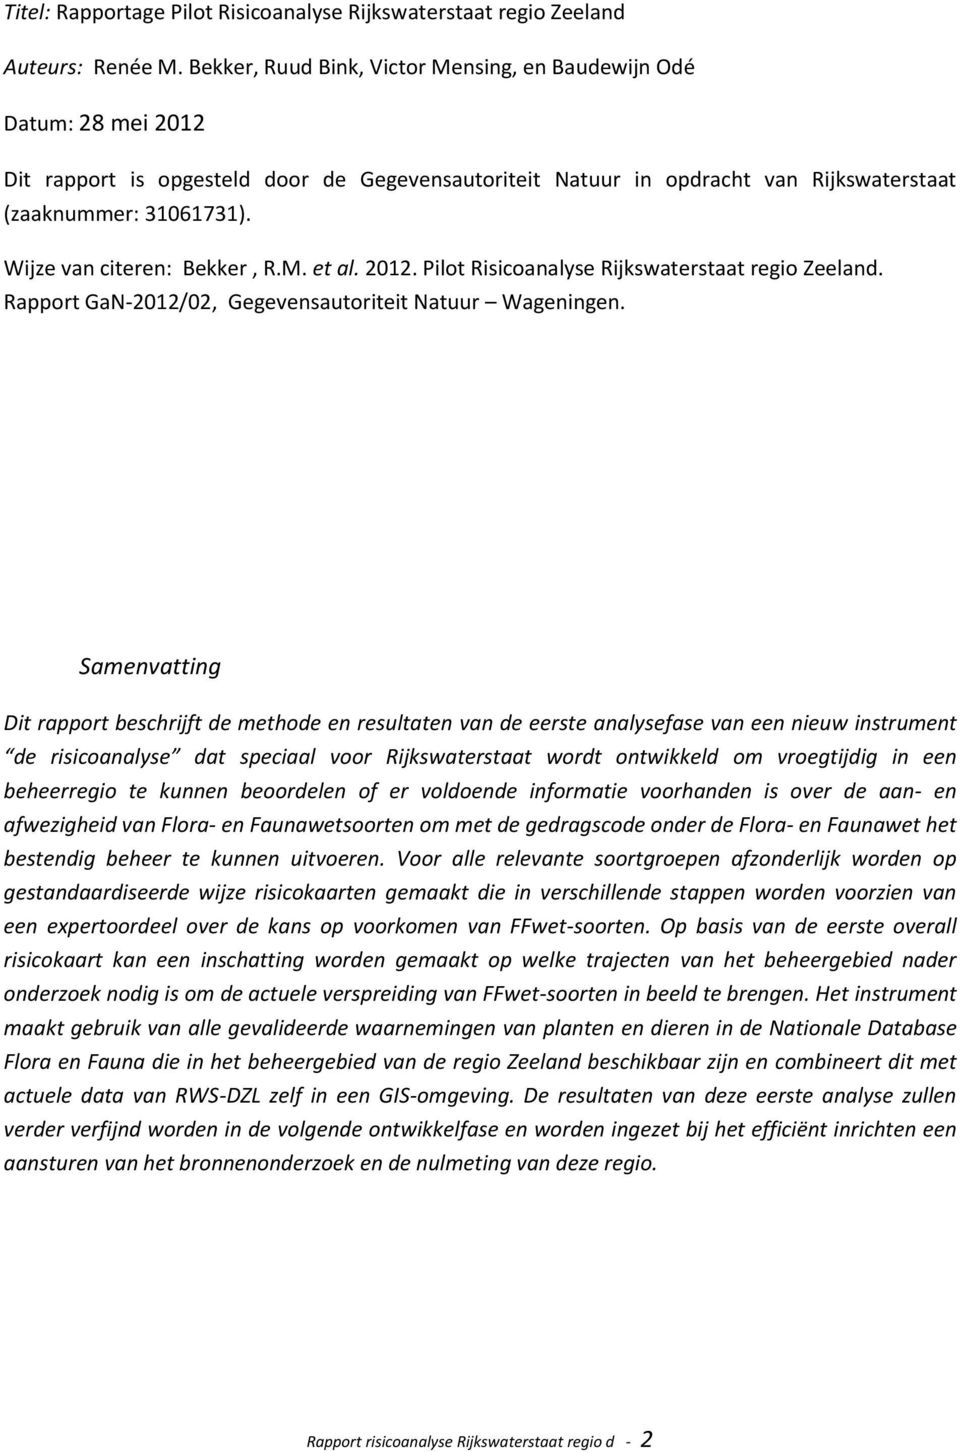 Wijze van citeren: Bekker, R.M. et al. 2012. Pilot Risicoanalyse Rijkswaterstaat regio Zeeland. Rapport GaN-2012/02, Gegevensautoriteit Natuur Wageningen.